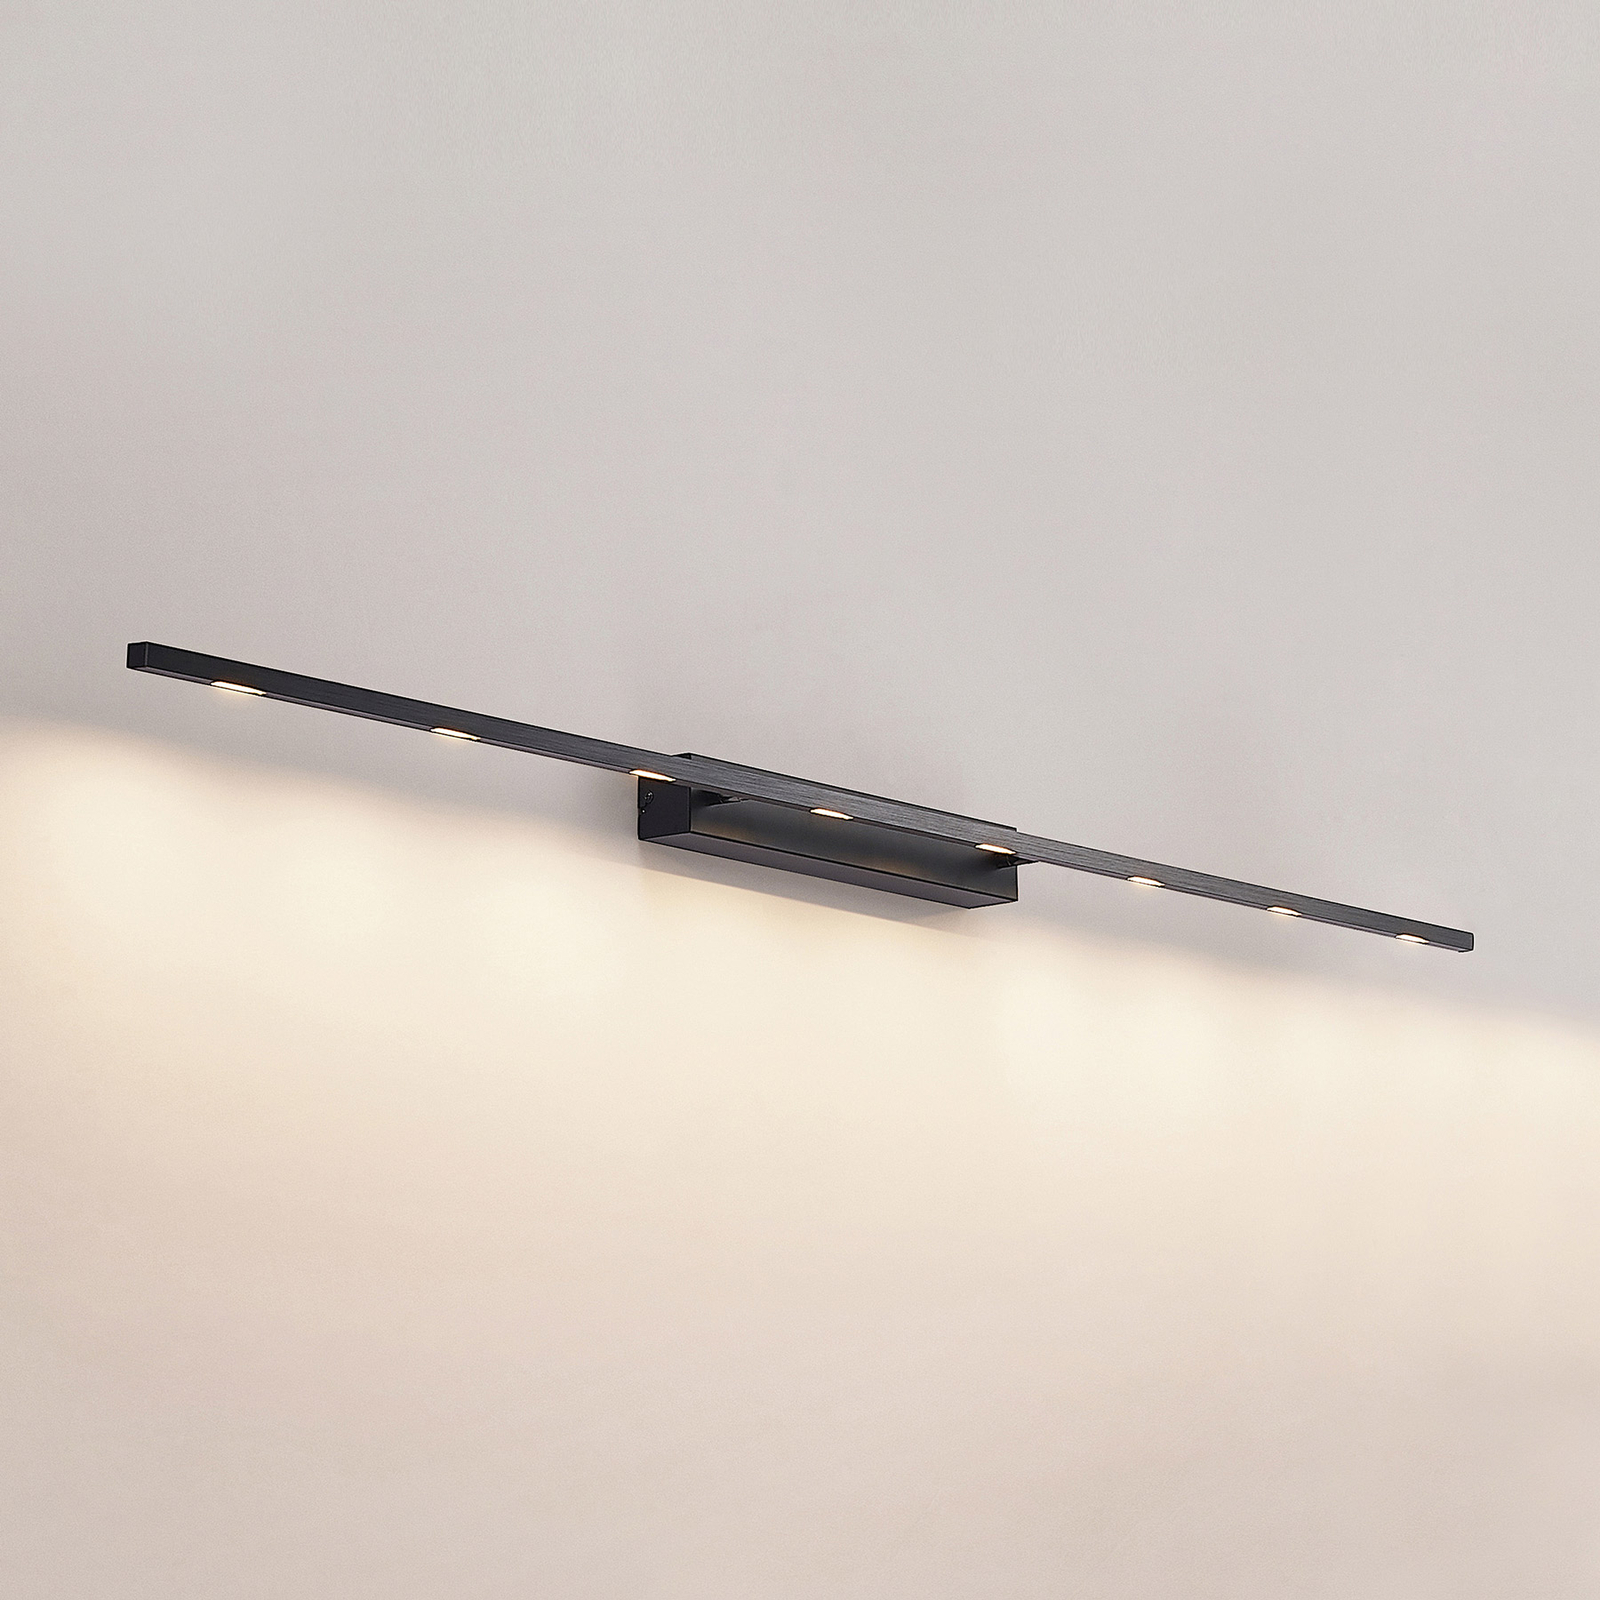 Lucande Stakato LED wall light, 8-bulb